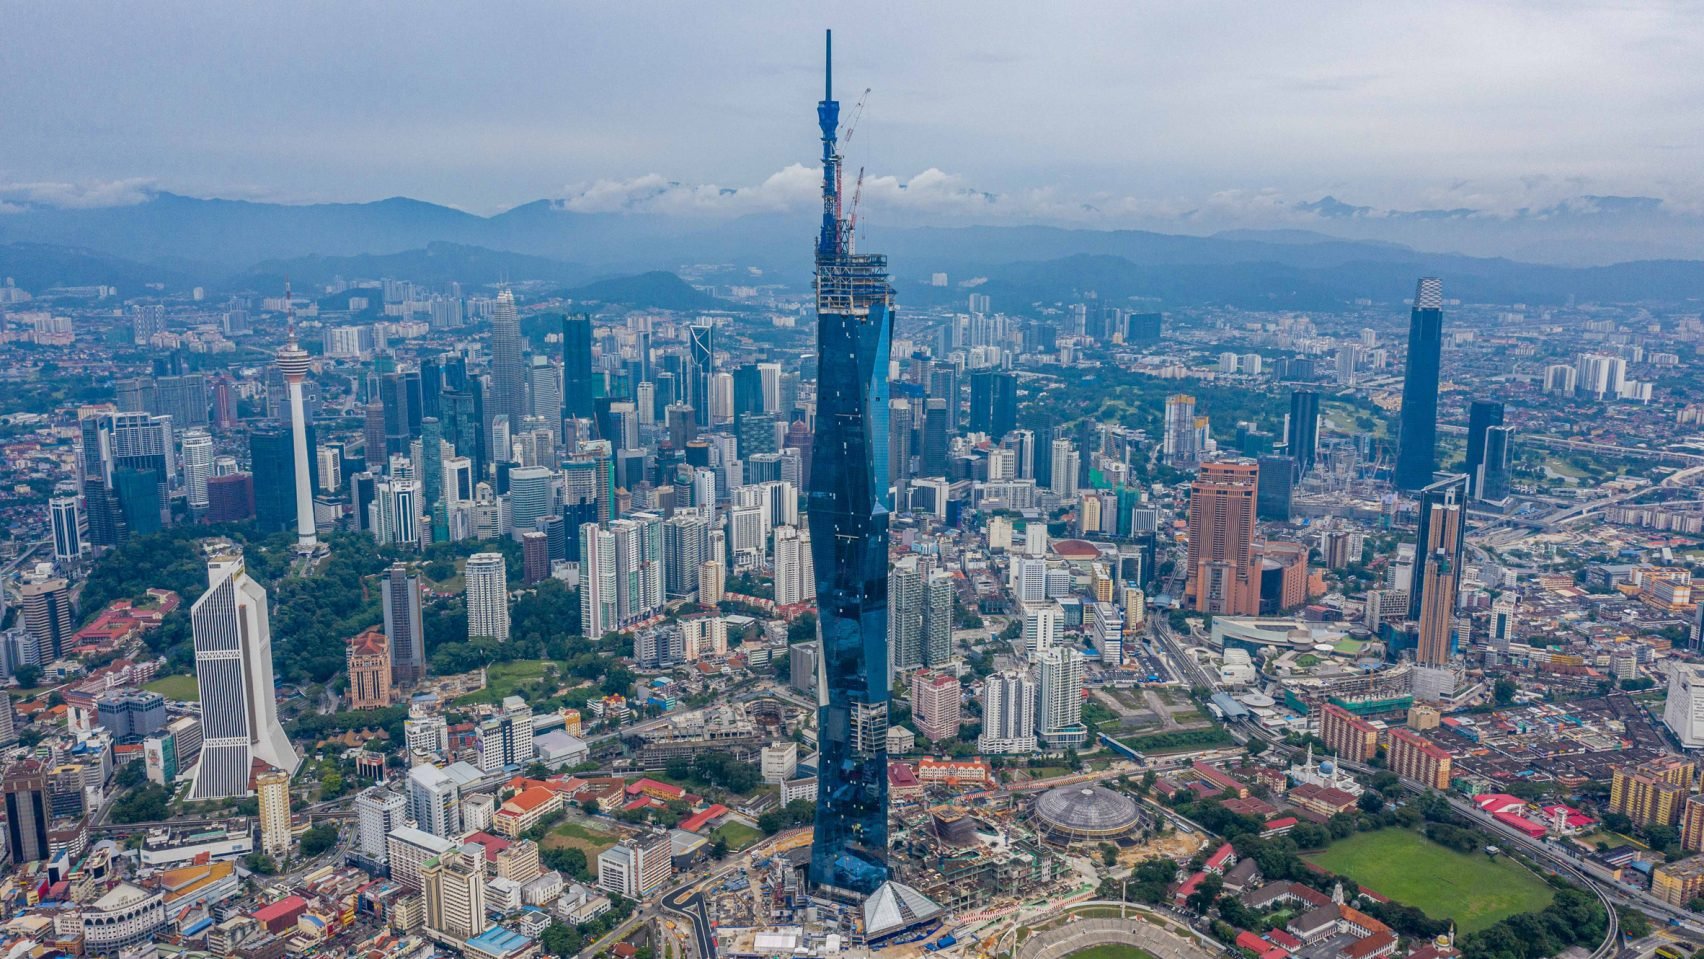 Drugi najwyższy wieżowiec na świecie